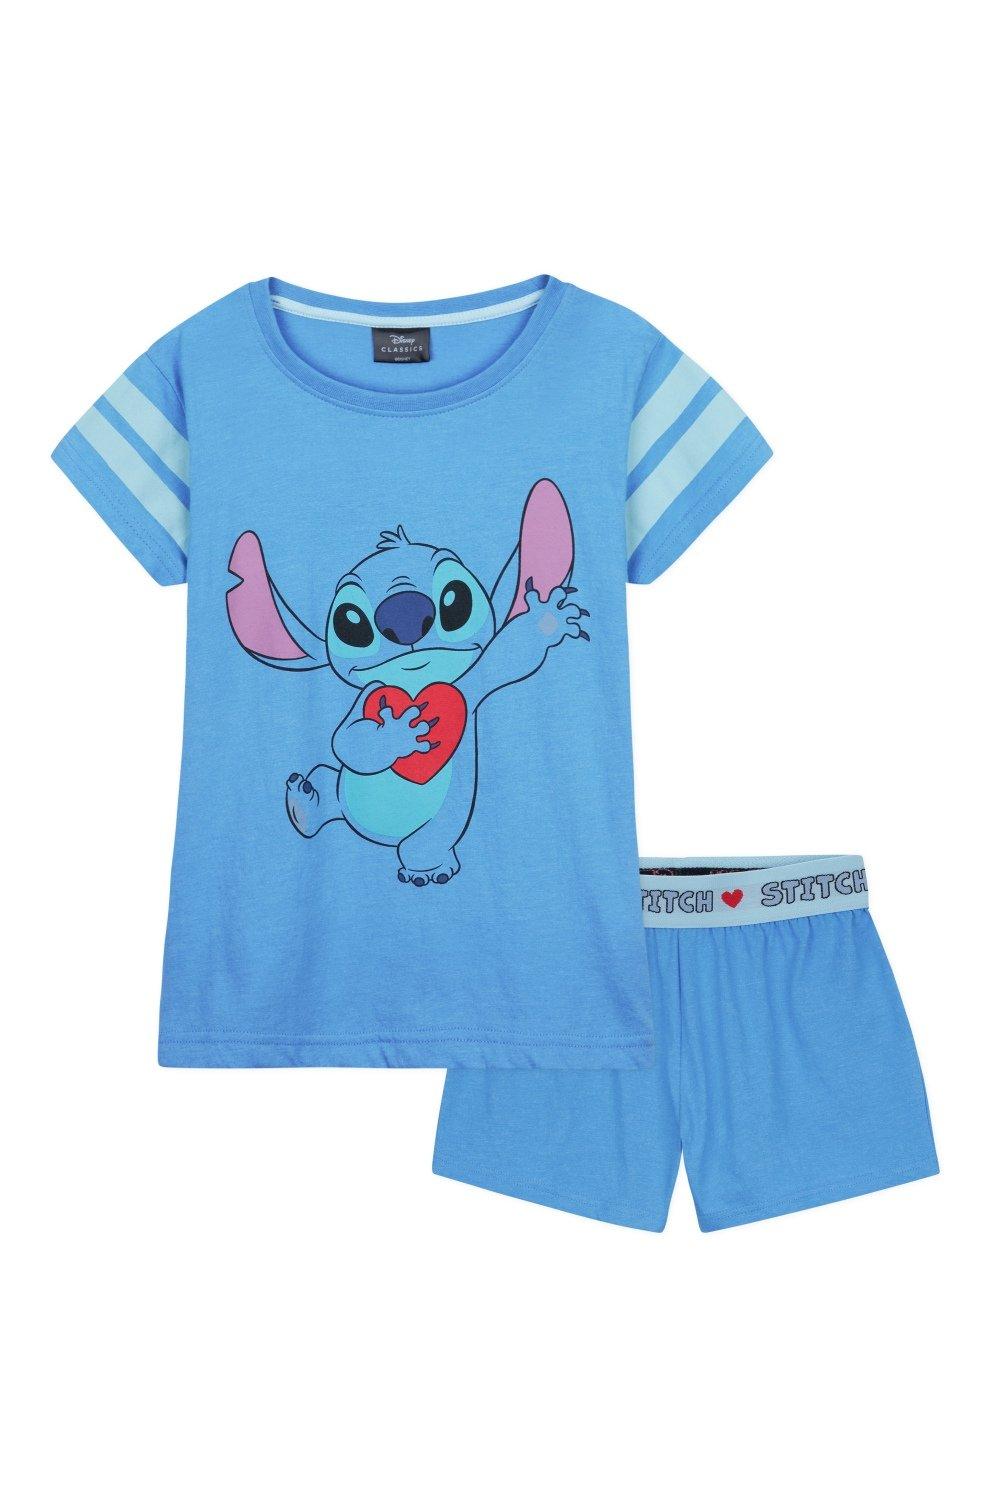 Пижамный комплект Stitch Shortie Disney, синий 54 стиля милые женские короткие носки disney минни микки маус стич винни пух хлопковые летние женские носки до щиколотки для девочек